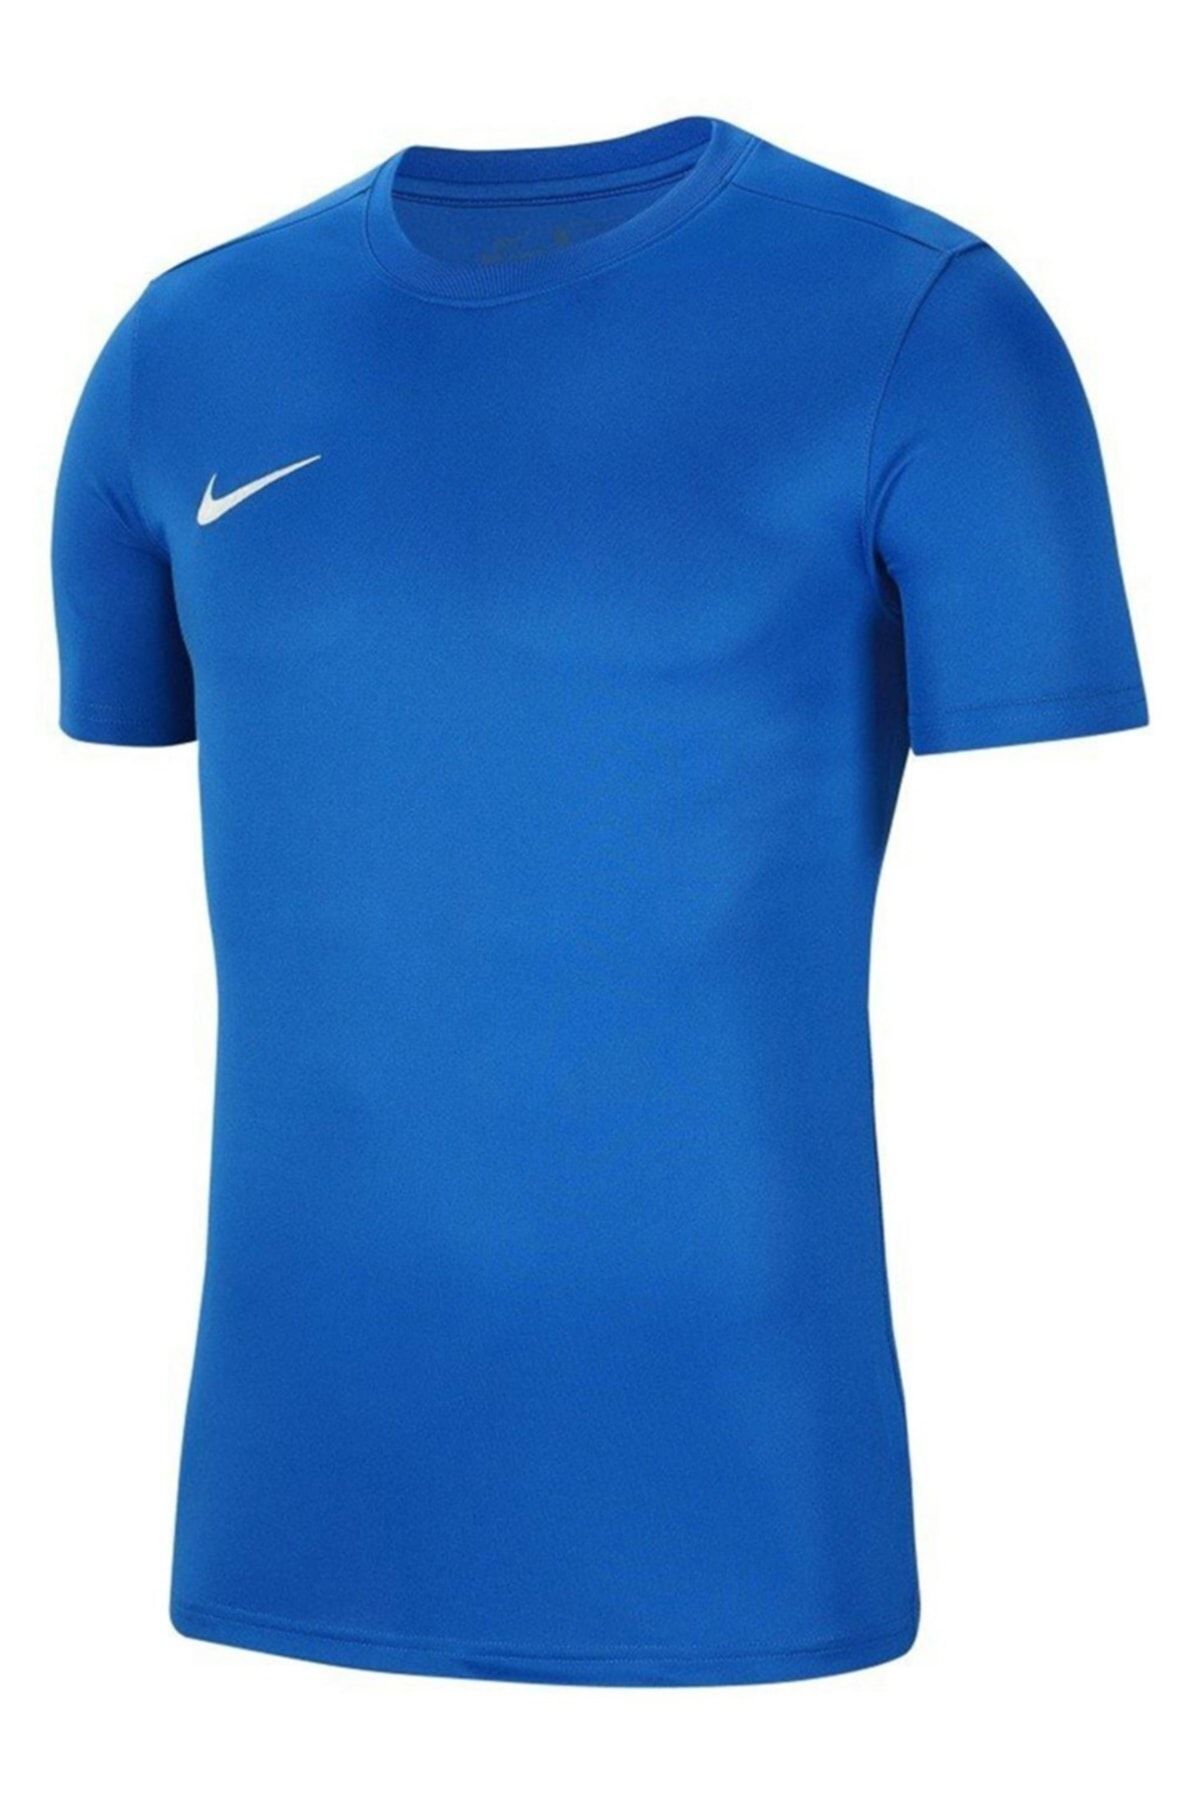 Nike Dri-fıt Park Vıı Çocuk Tişört Bv6741-463